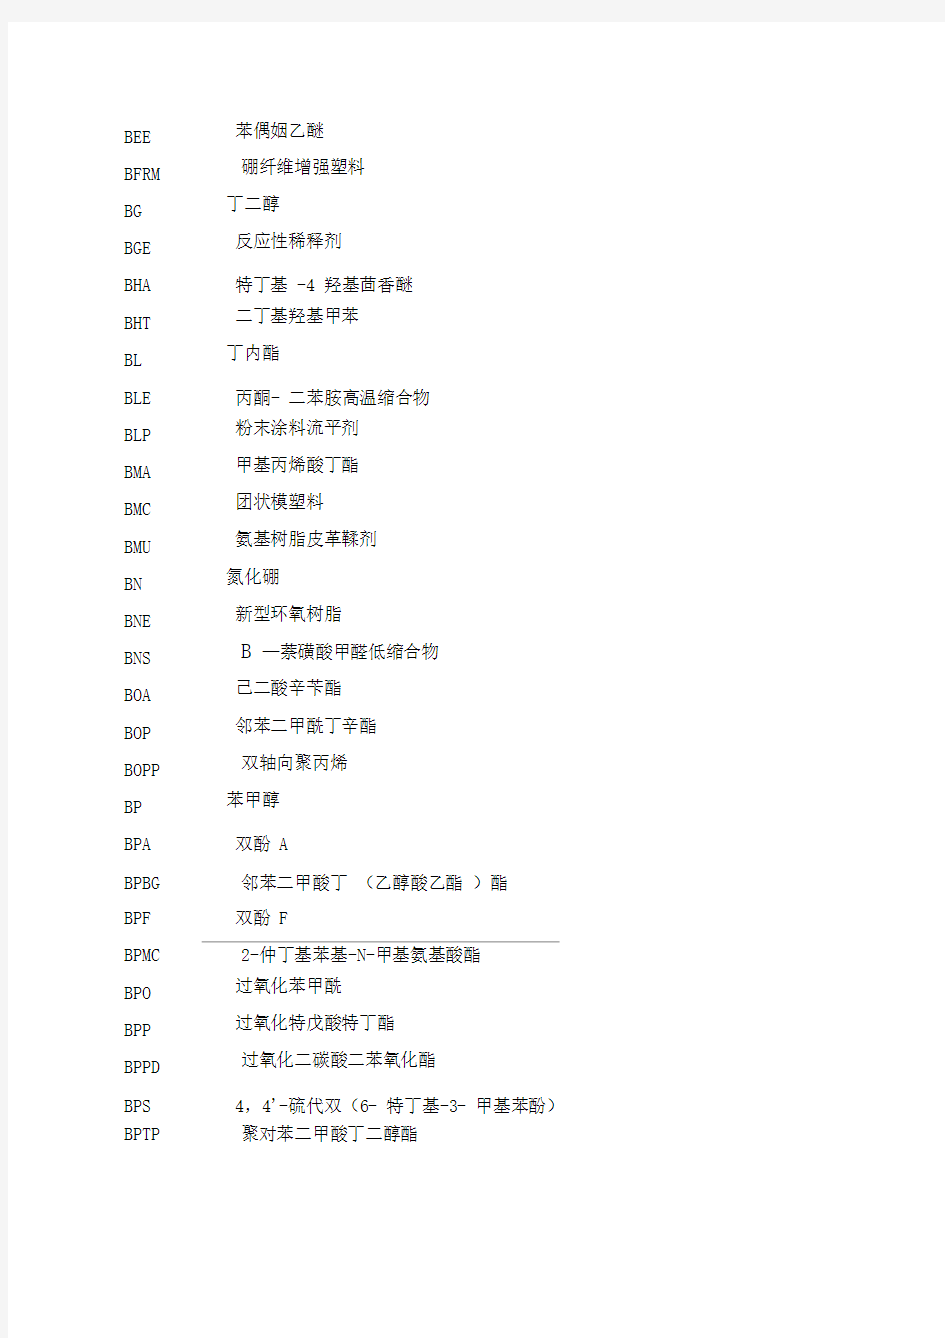 常用化工产品英文缩写与中文名称对照表(doc18)